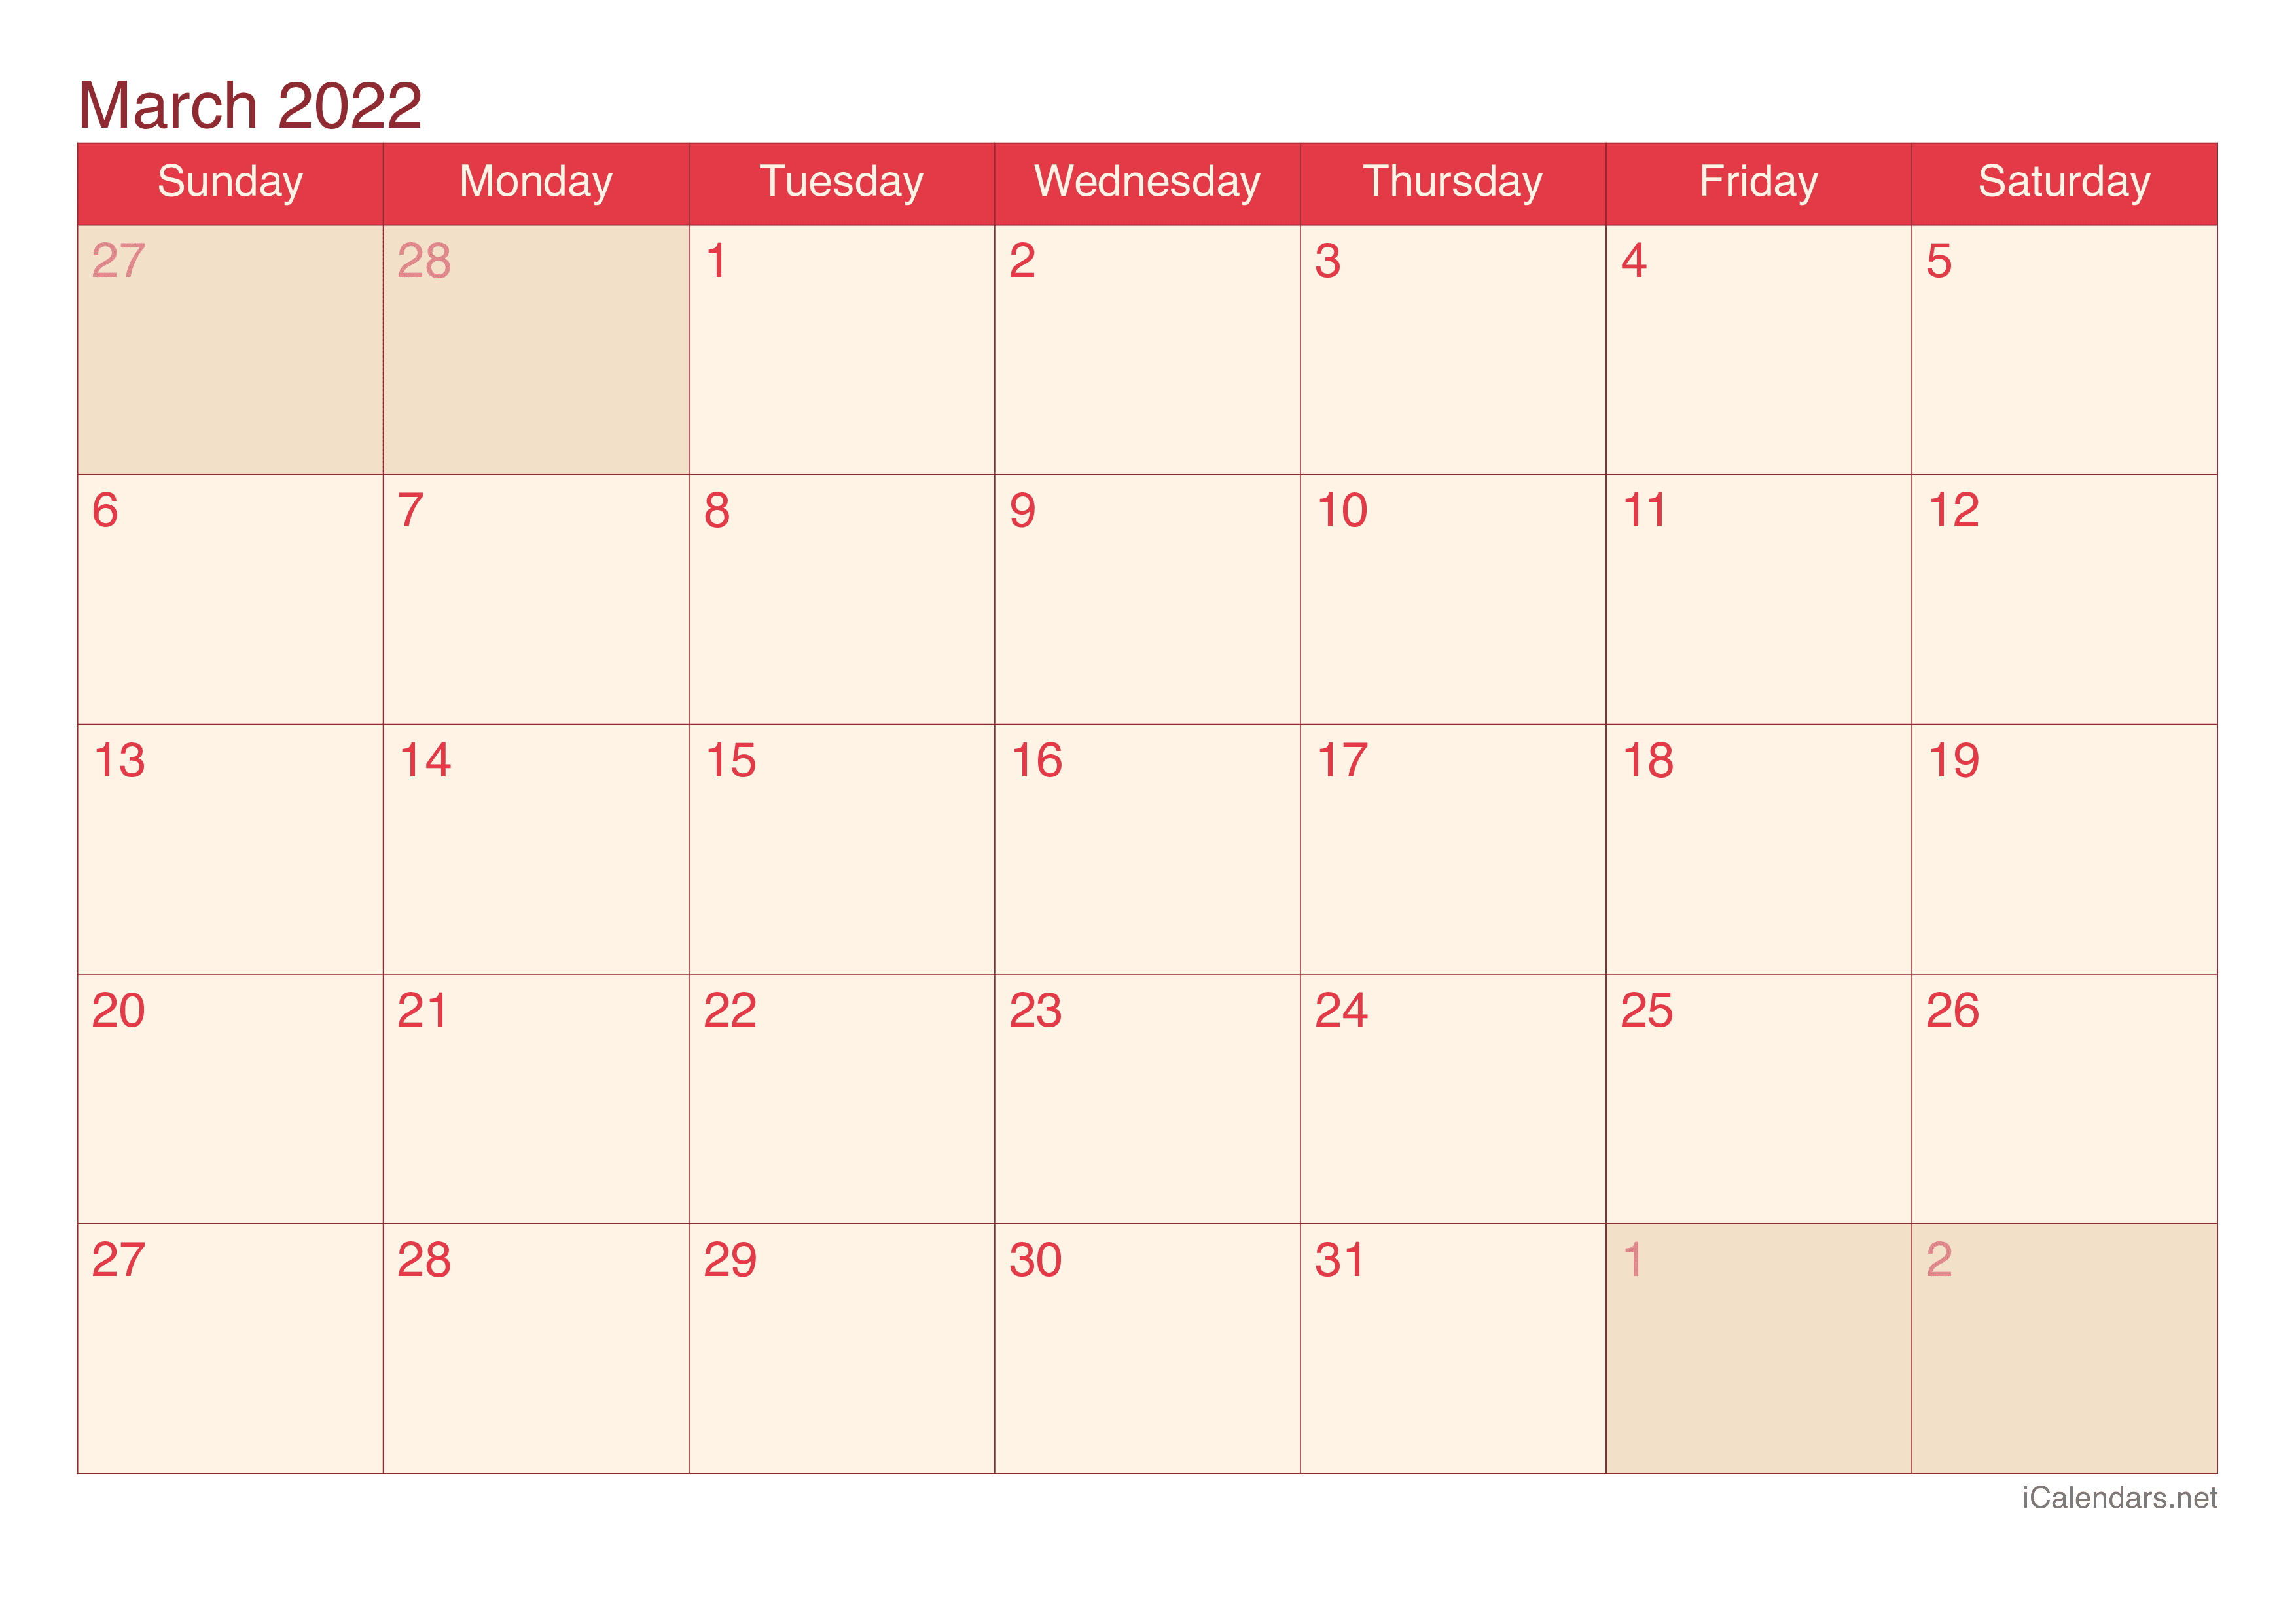 2022 March Calendar - Cherry